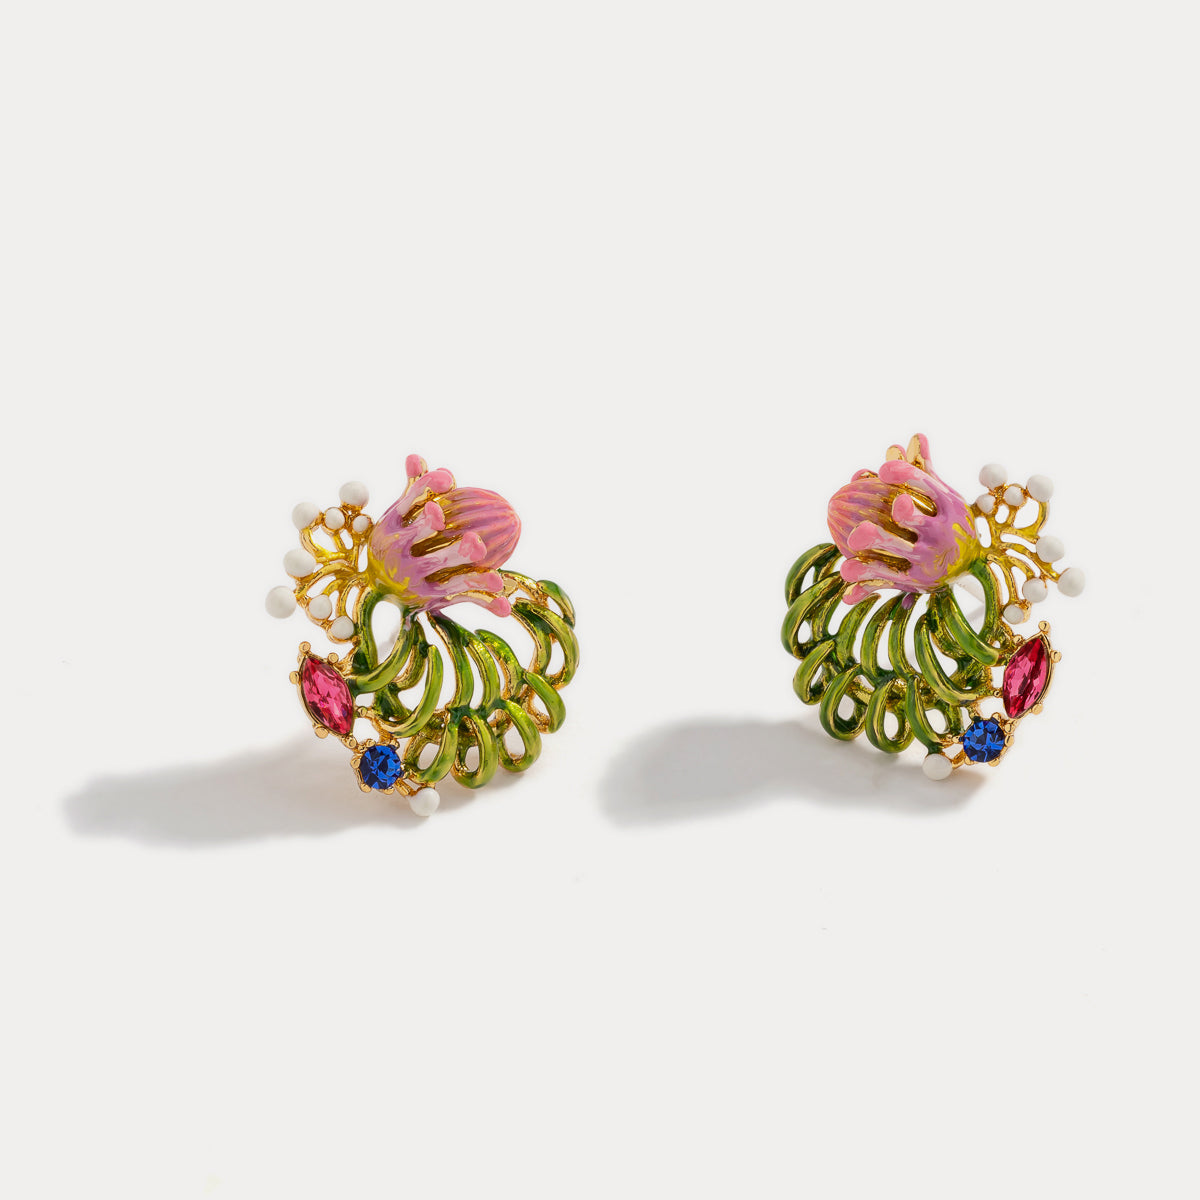 Selenichast tropical flower earrings